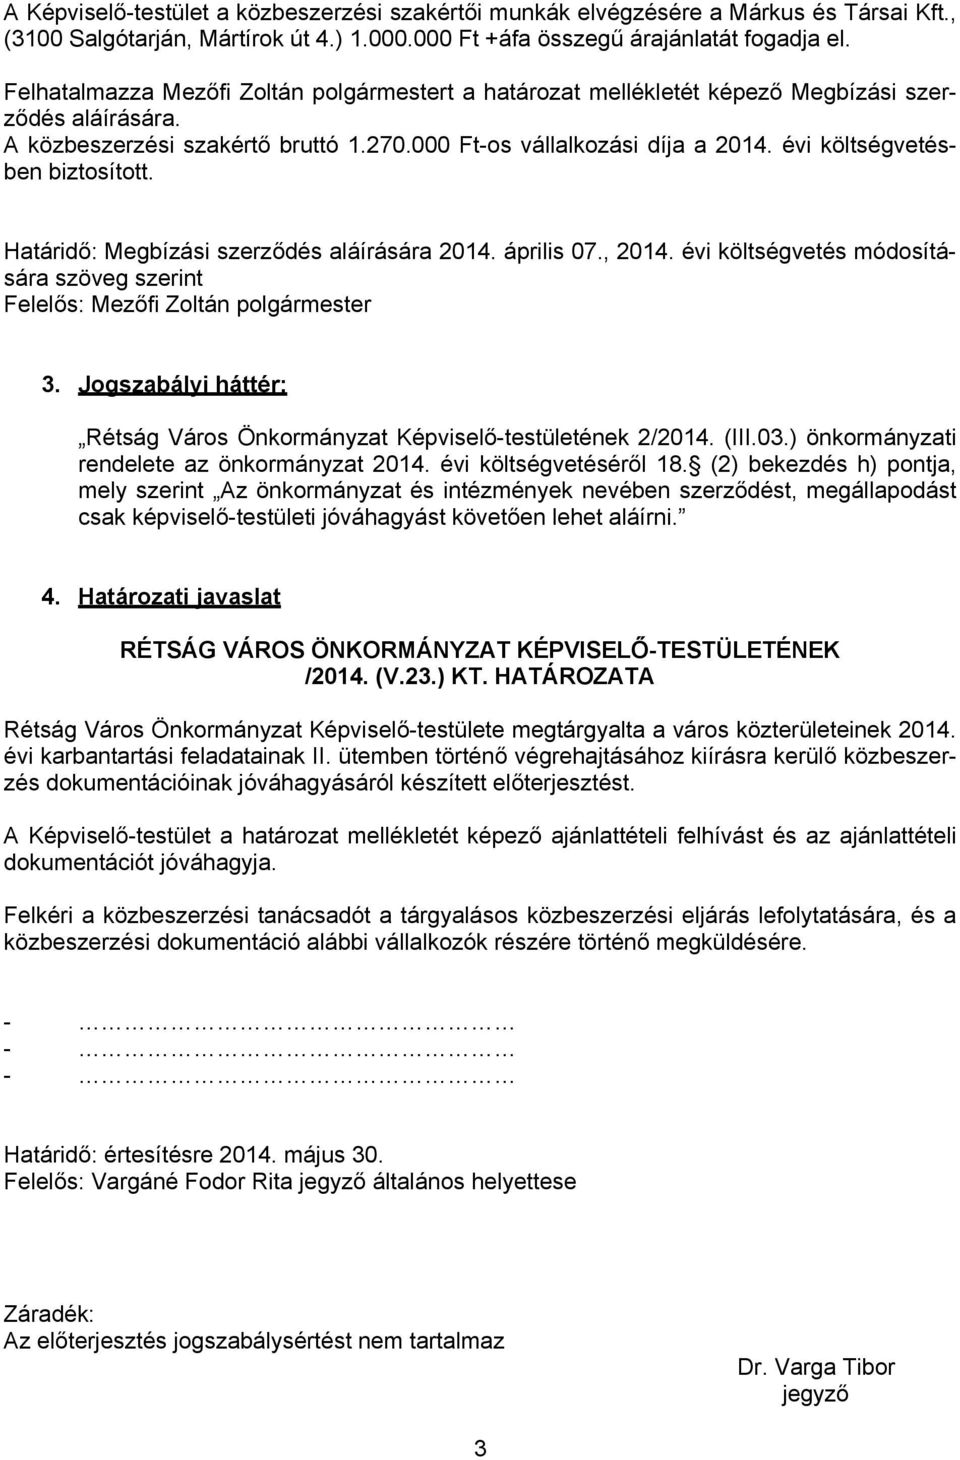 évi költségvetésben biztosított. Határidő: Megbízási szerződés aláírására 2014. április 07., 2014. évi költségvetés módosítására szöveg szerint Felelős: Mezőfi Zoltán polgármester 3.